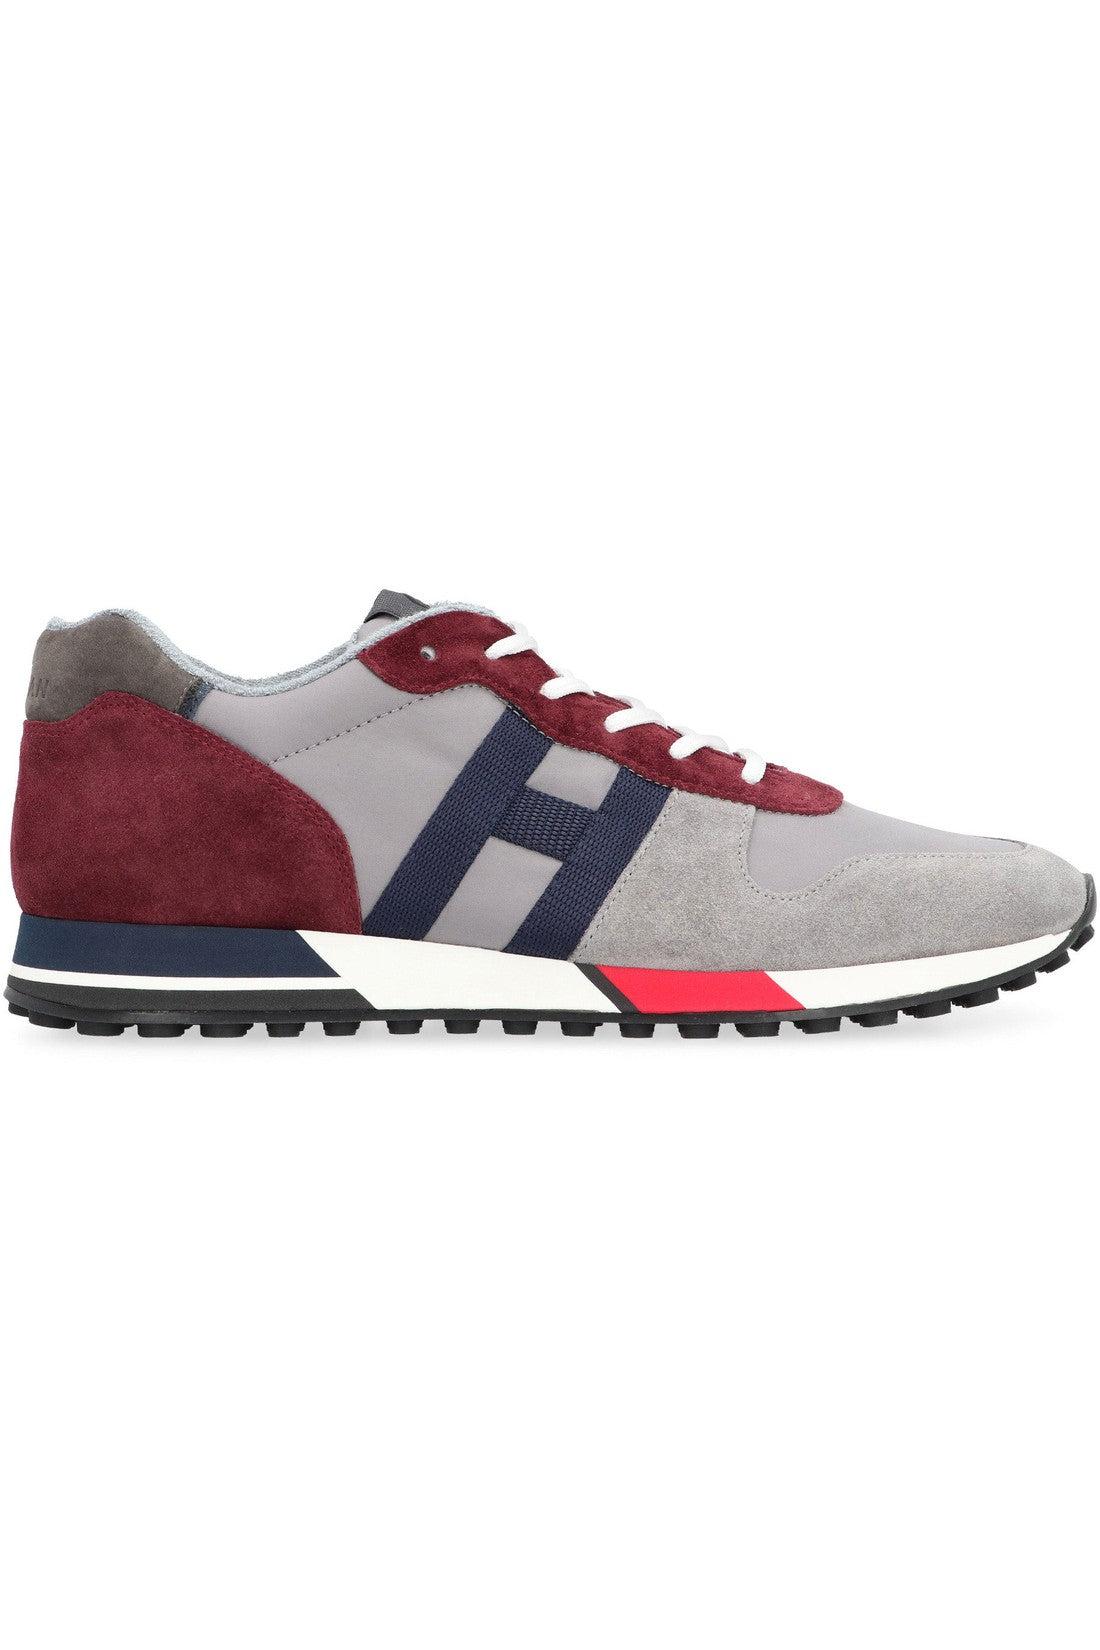 Hogan-OUTLET-SALE-Hogan H383 low-top sneakers-ARCHIVIST